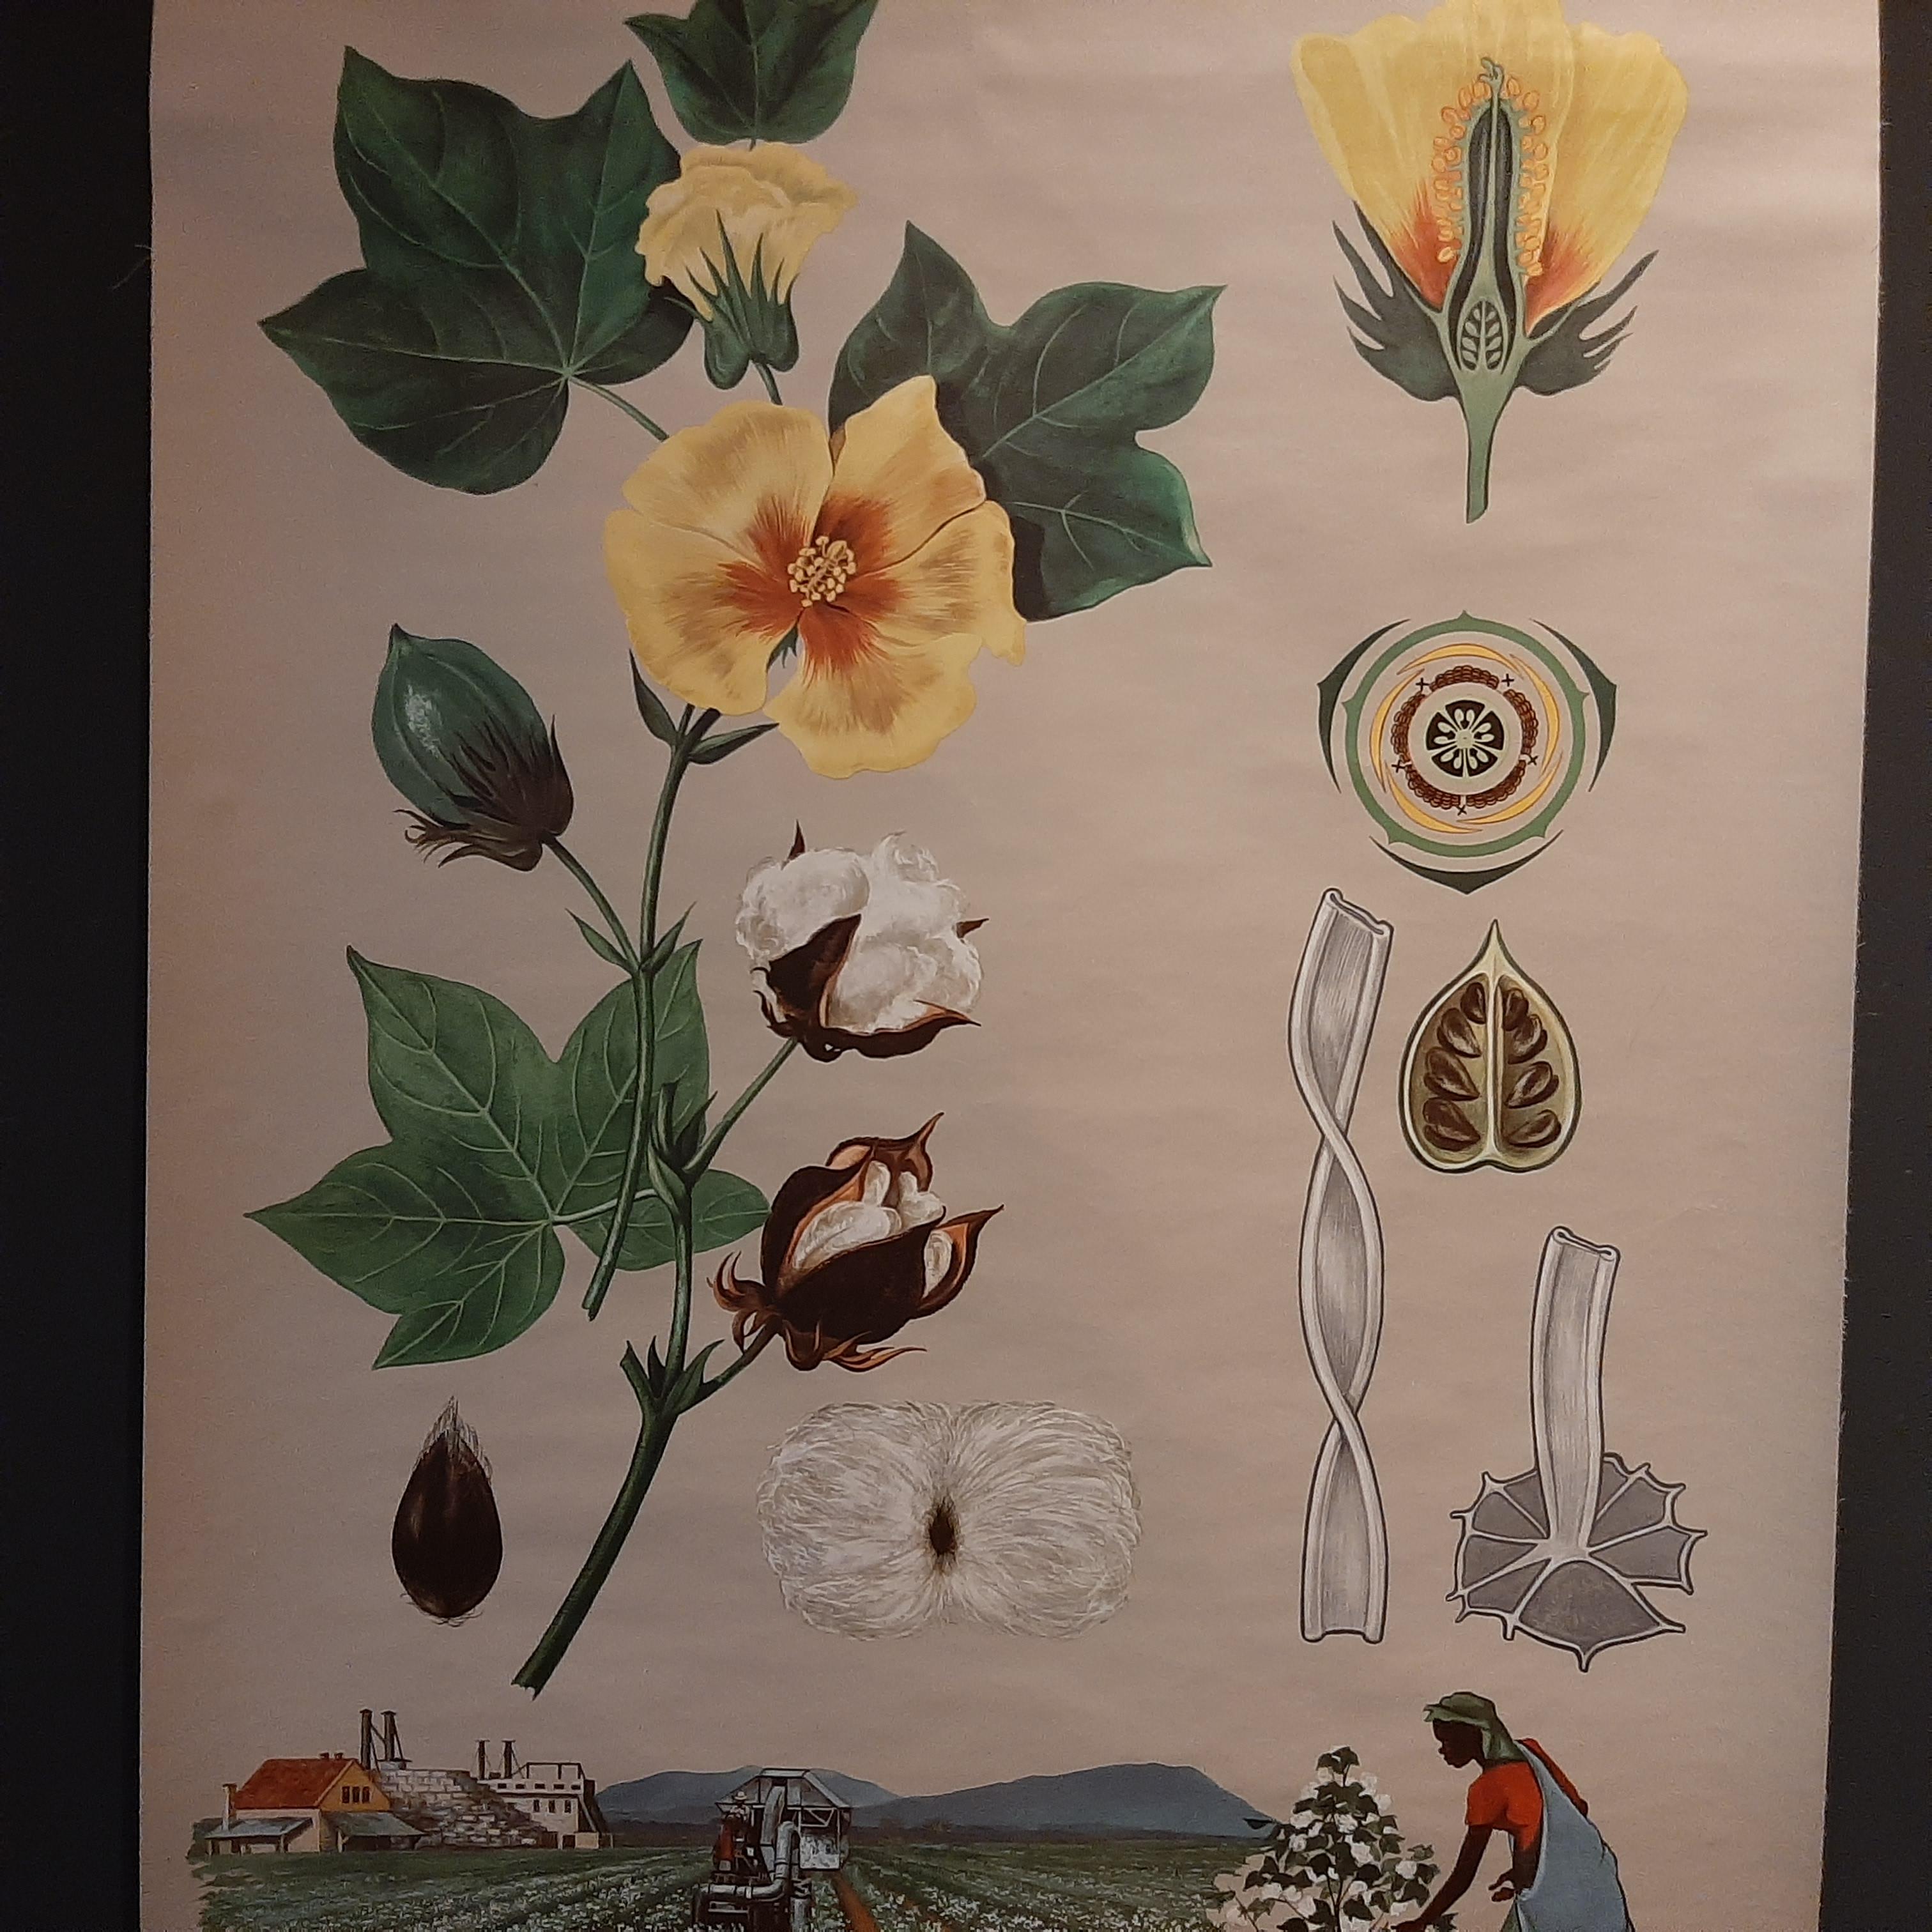 La planche murale vintage de botanique représentant un plant de coton et la culture du coton par Jung, Koch et Quentell, publiée vers 1960, est un excellent exemple des planches pédagogiques utilisées au milieu du 20e siècle à des fins